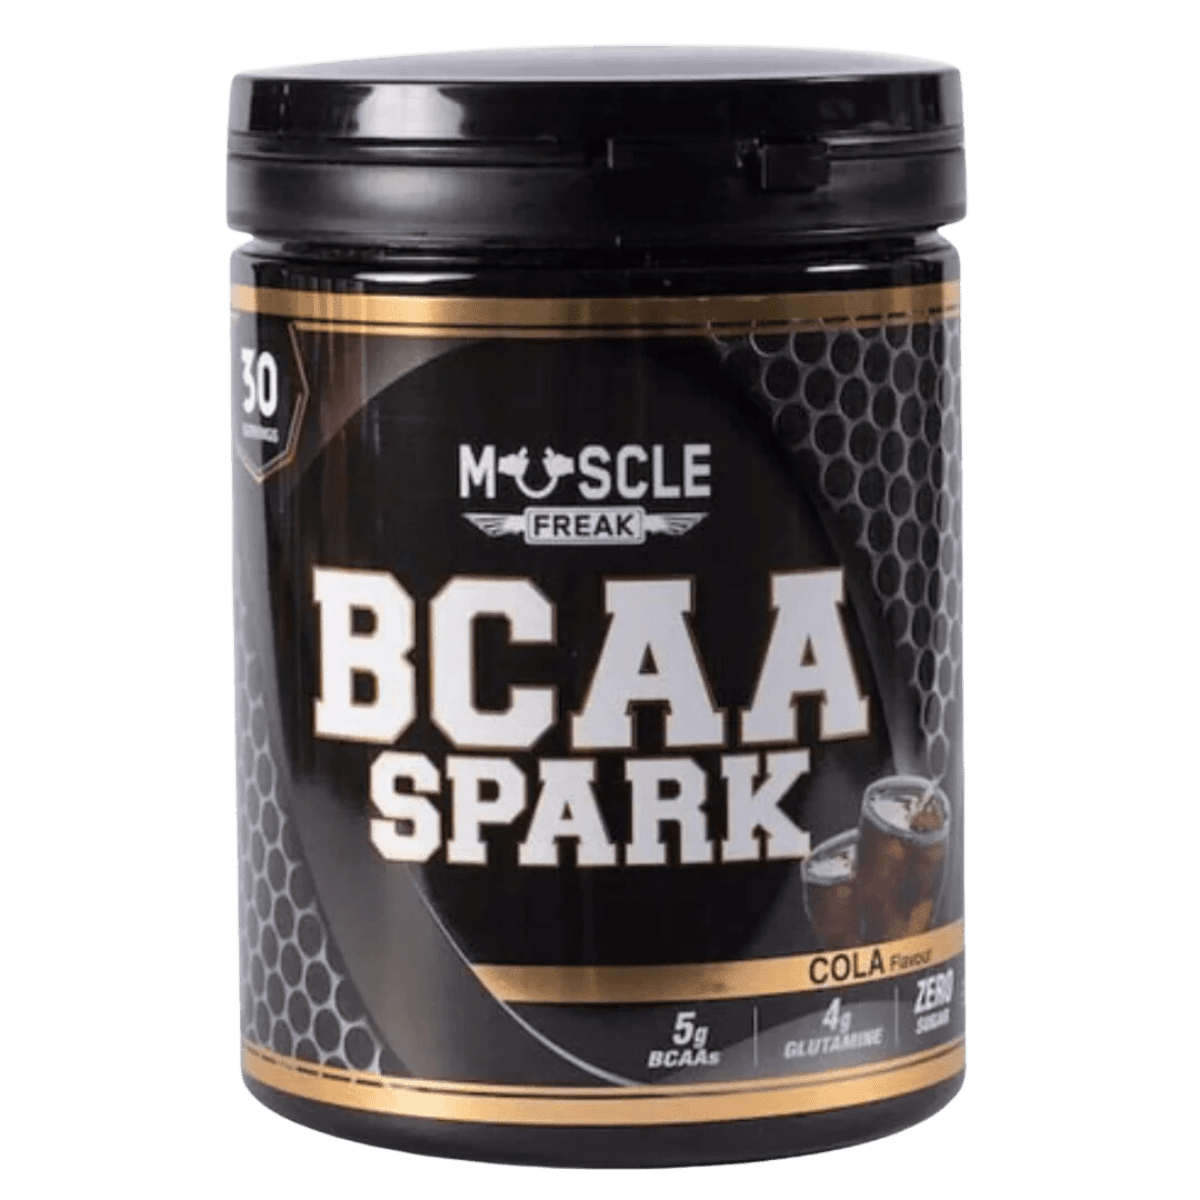 Muscle Freak BCAA Spark